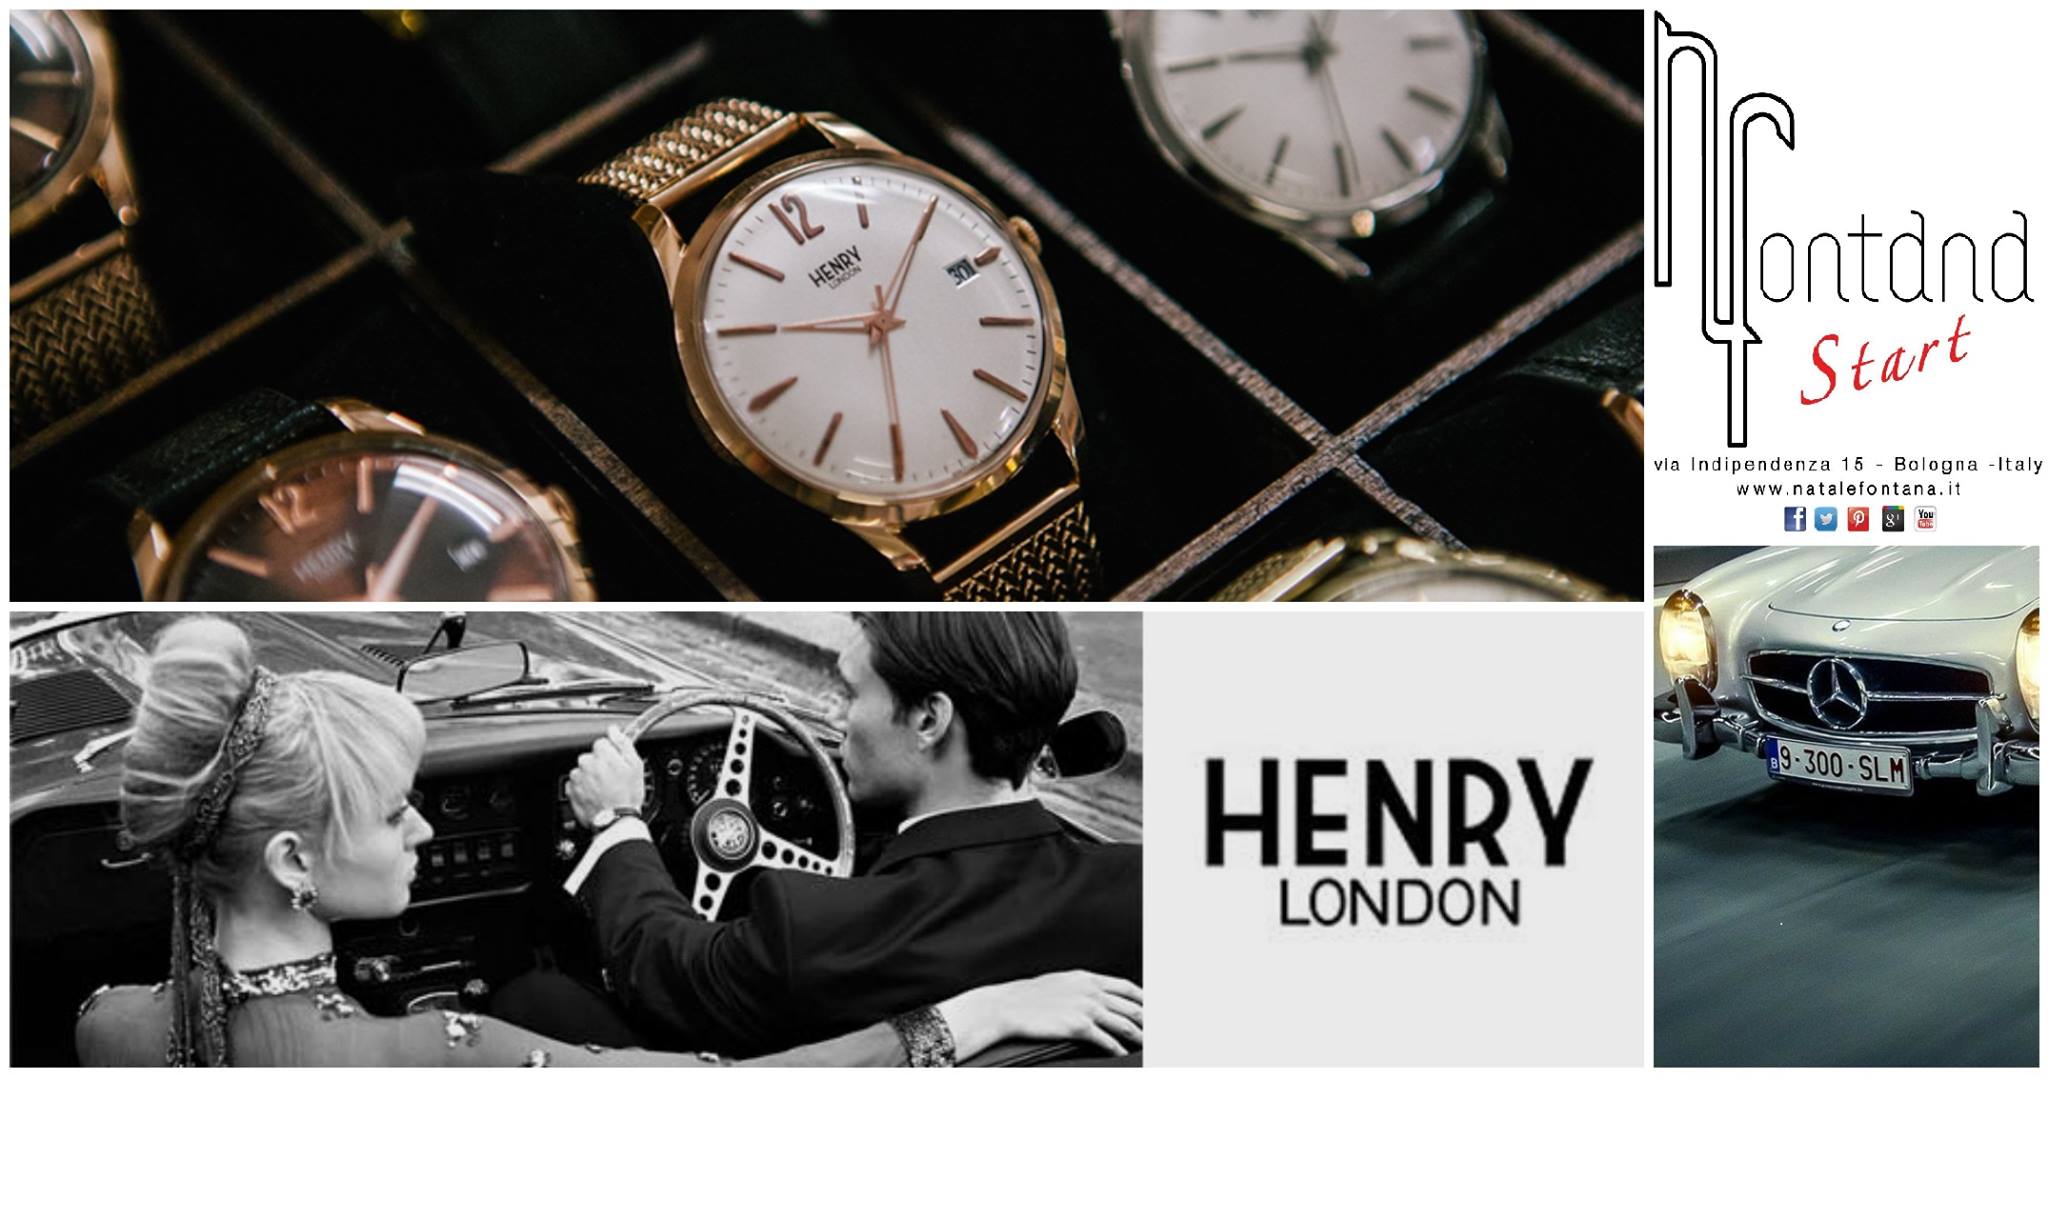 Henry London... d'ispirazione vintage e uno stile tutto British nel punto vendita Natale Fontana Start di Bologna